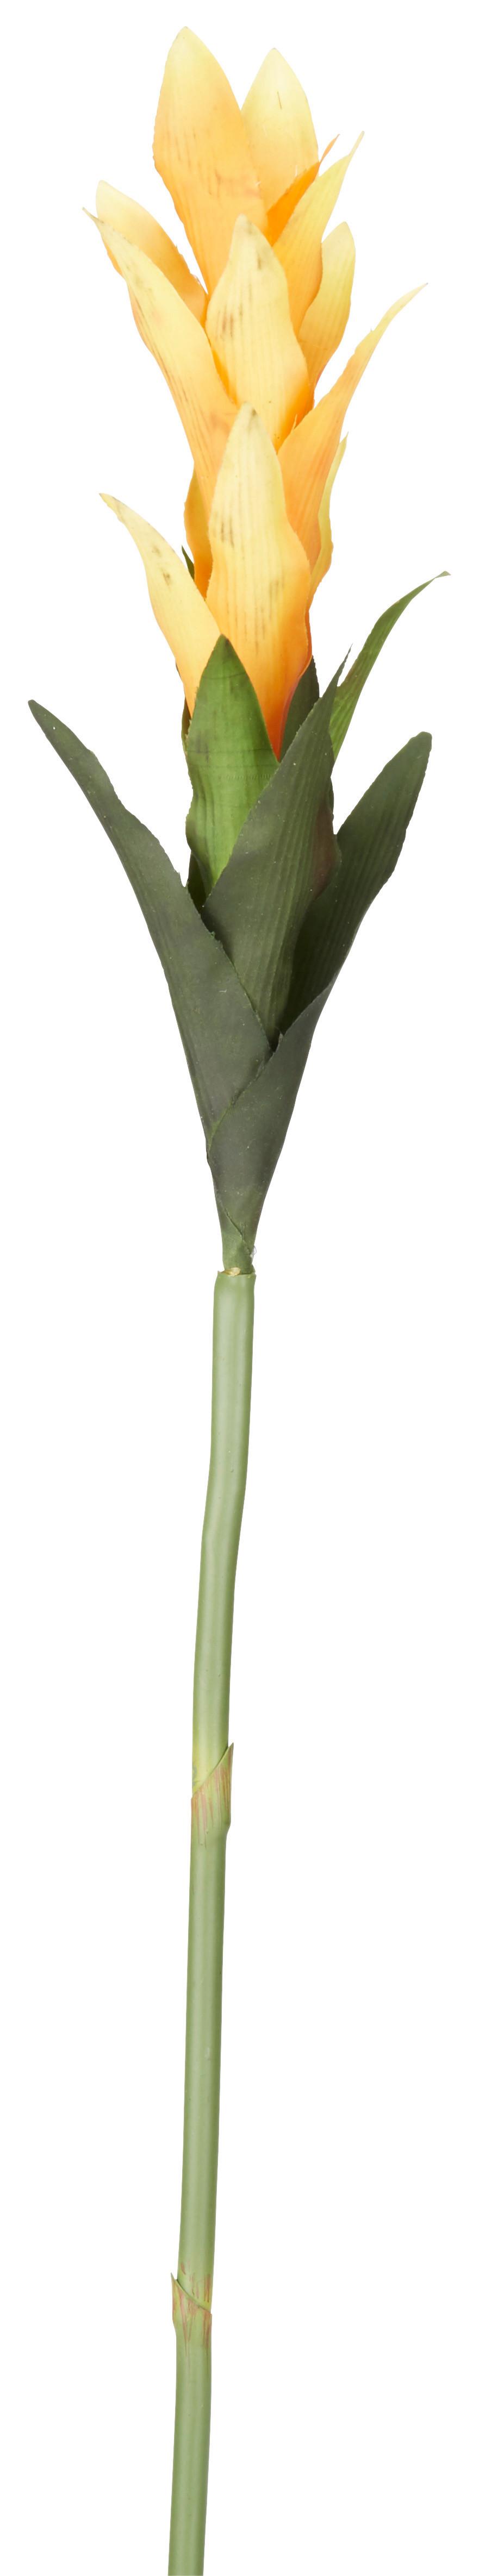 Umjetno Cvijeće Curcumablüte I - zelena/žuta, Basics, plastika (65cm)